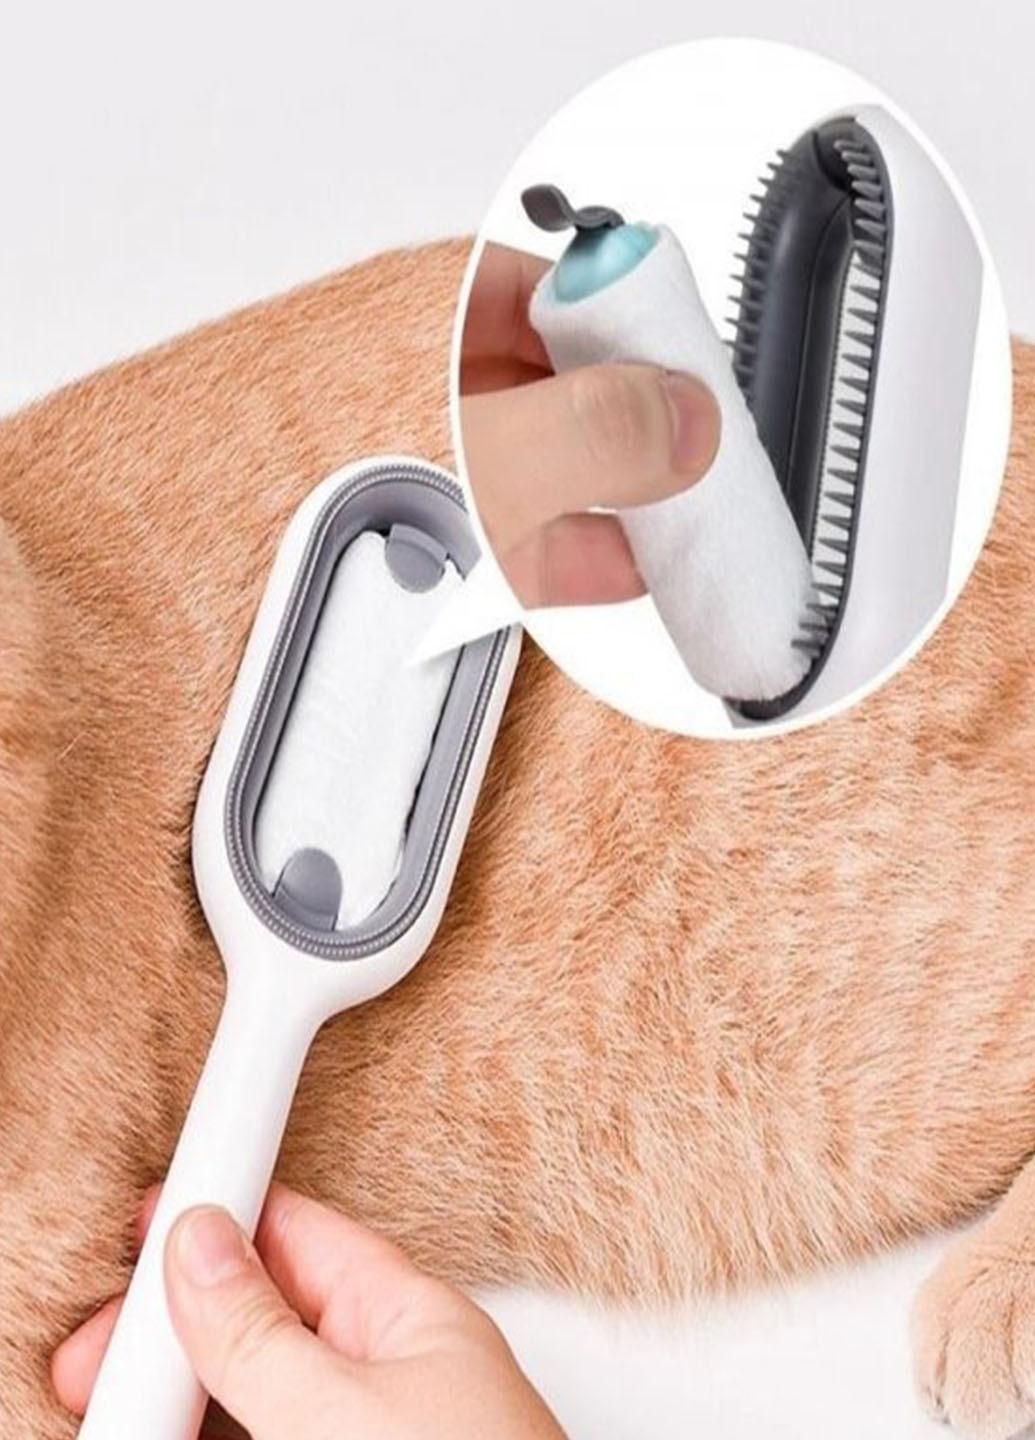 Багатофункціональна щітка для тварин Pet Gravity 4в1 Pet Grooming Comb для сухого та вологово вичісування собак та котів Good Idea (272149206)